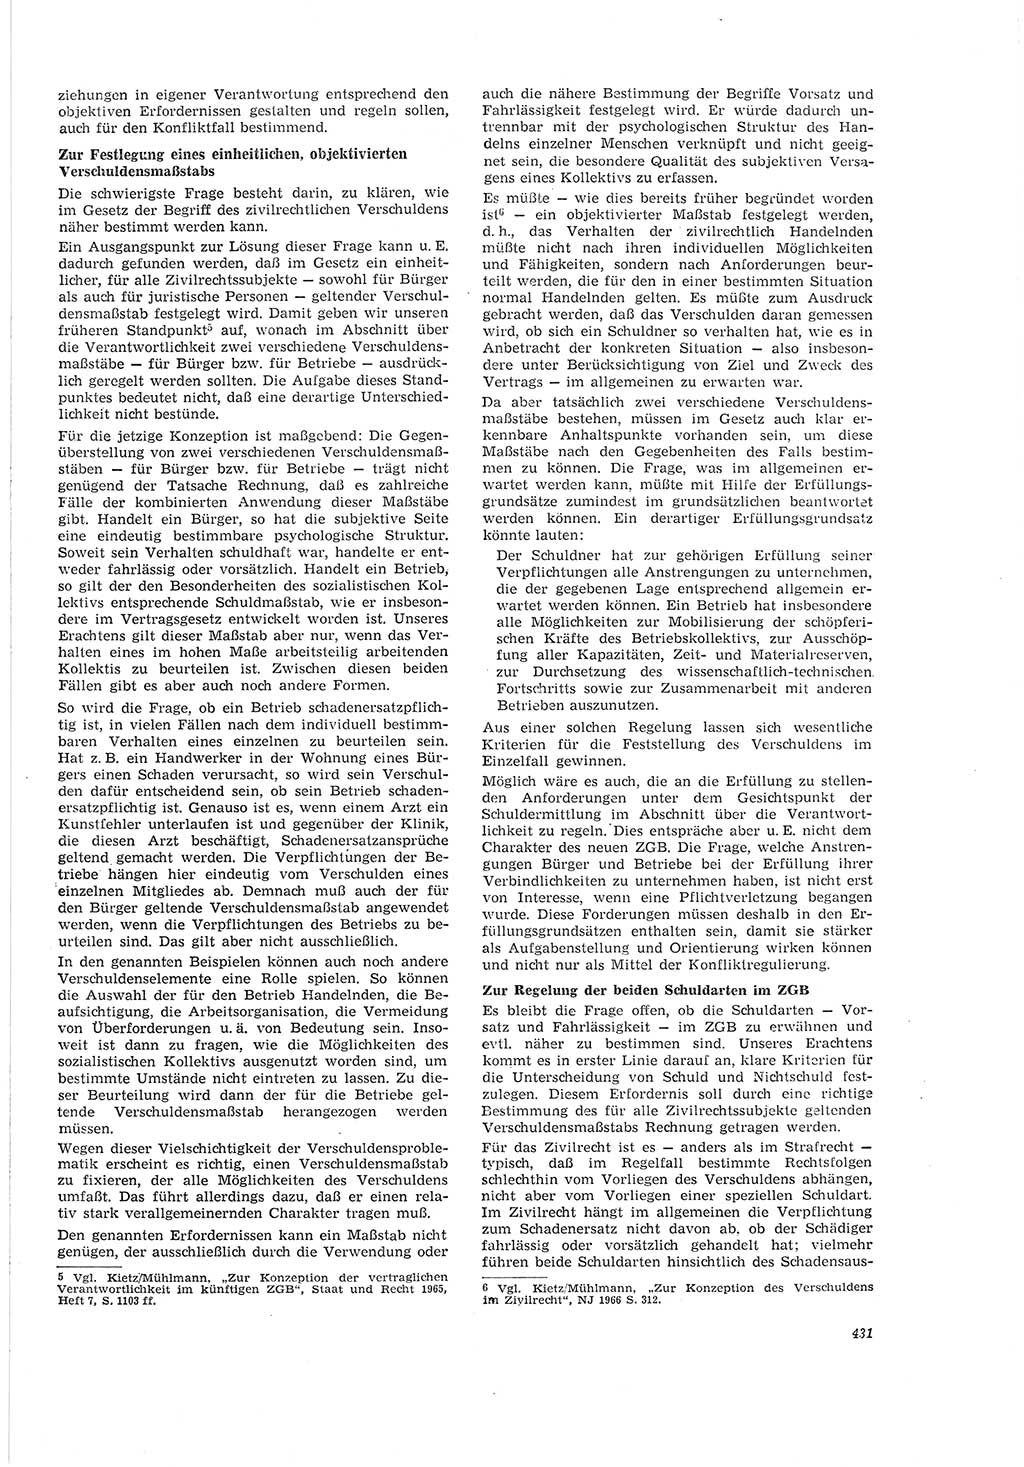 Neue Justiz (NJ), Zeitschrift für Recht und Rechtswissenschaft [Deutsche Demokratische Republik (DDR)], 20. Jahrgang 1966, Seite 431 (NJ DDR 1966, S. 431)